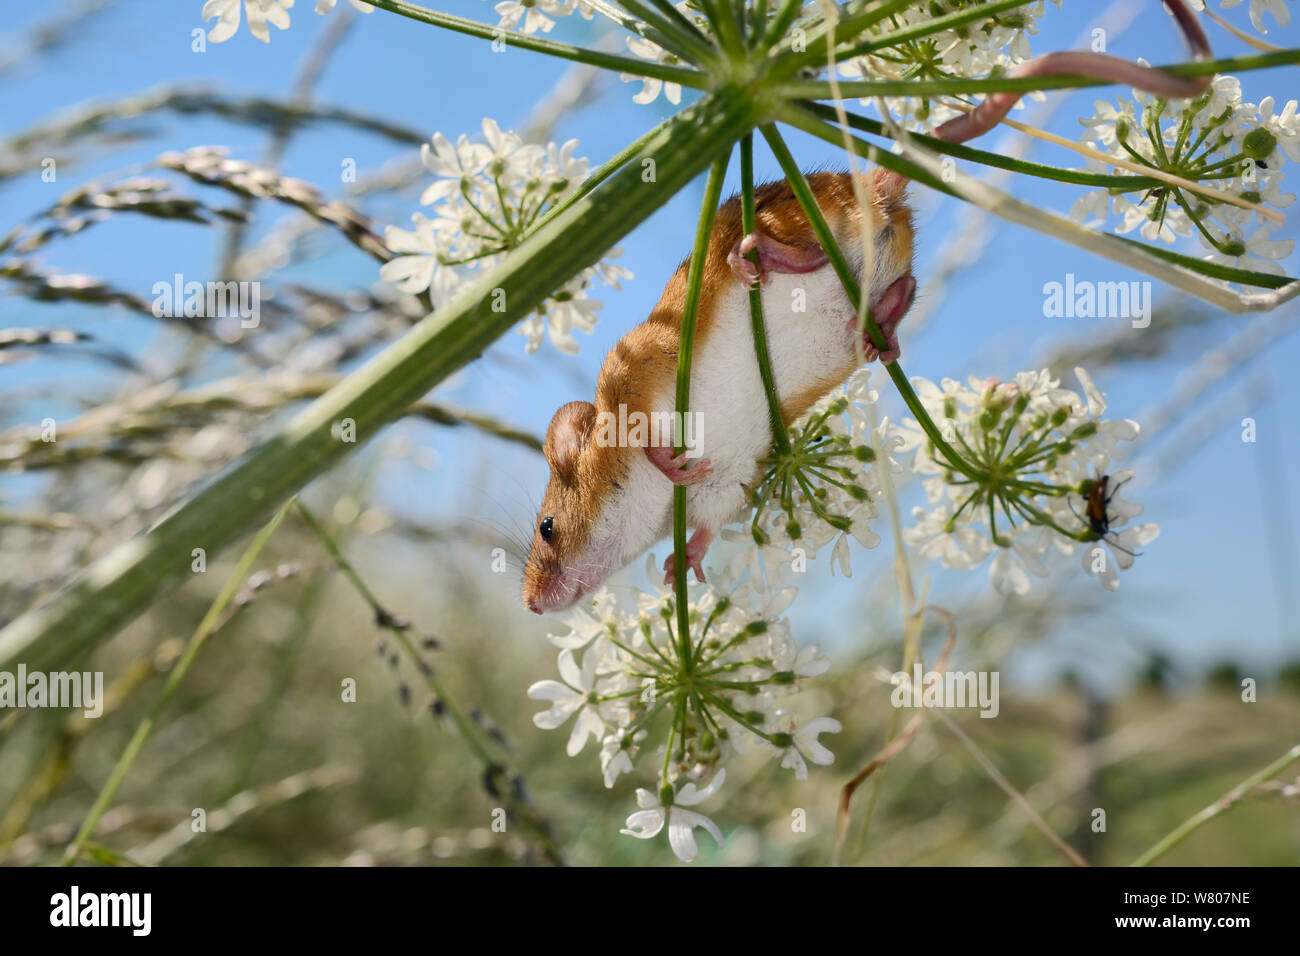 Ernte Maus (Micromys Minutus) Festhalten an einer Gemeinsamen scharfkraut (Heracleum sphondylium) flowerhead mit seinen Füßen und Schwanz nach Freigabe in den Wilden, Molton, Northampton, UK, Juni. Stockfoto